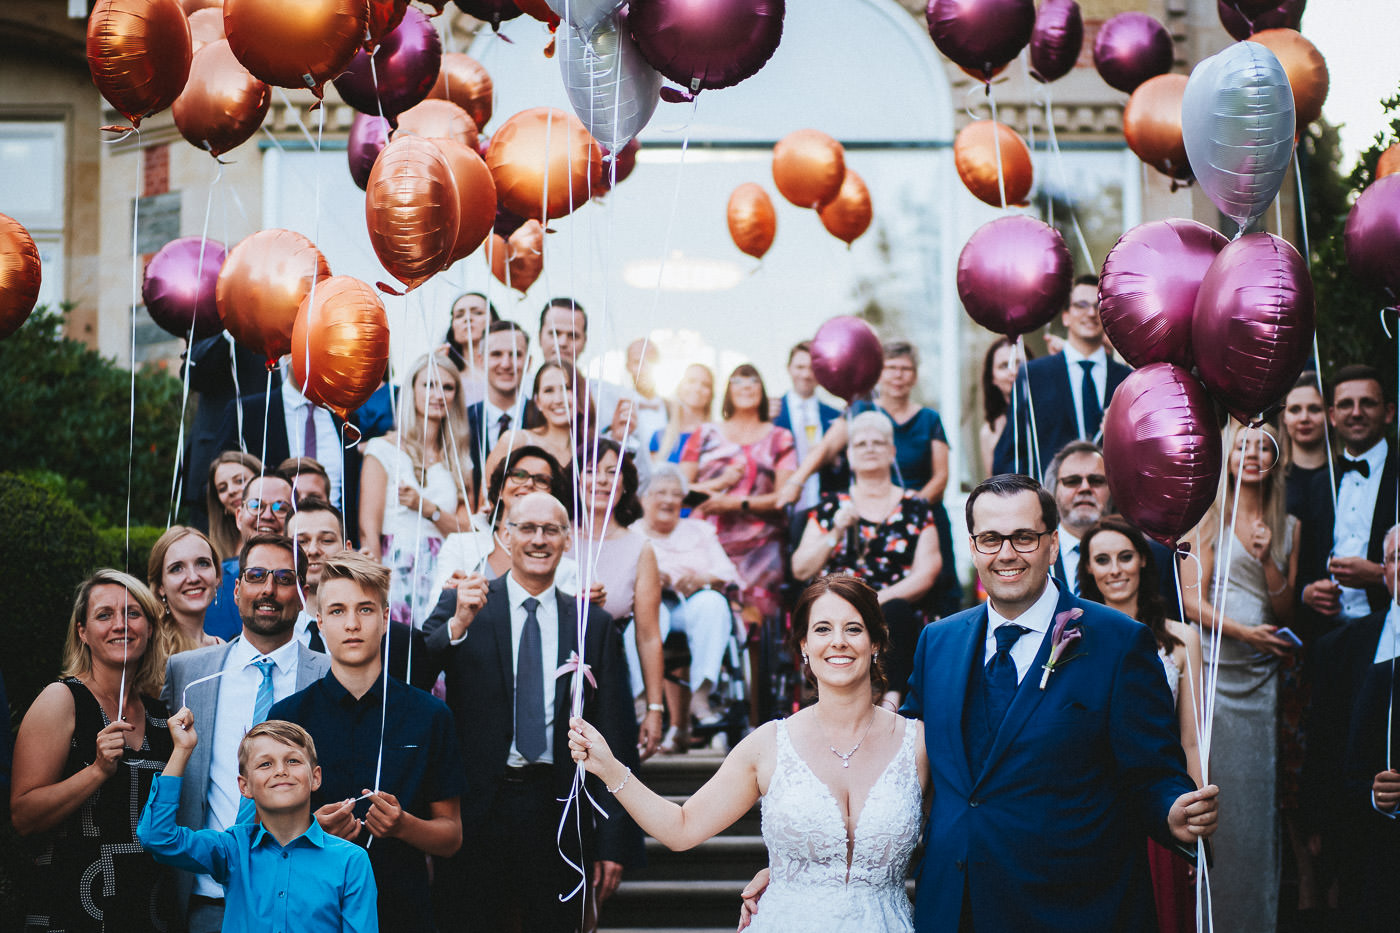 Gruppenfoto von Hochzeitsgesellschaft mit Brautpaar und Ballons vor der Villa Rothschild - Hochzeitsfotograf Taunus Brautrausch